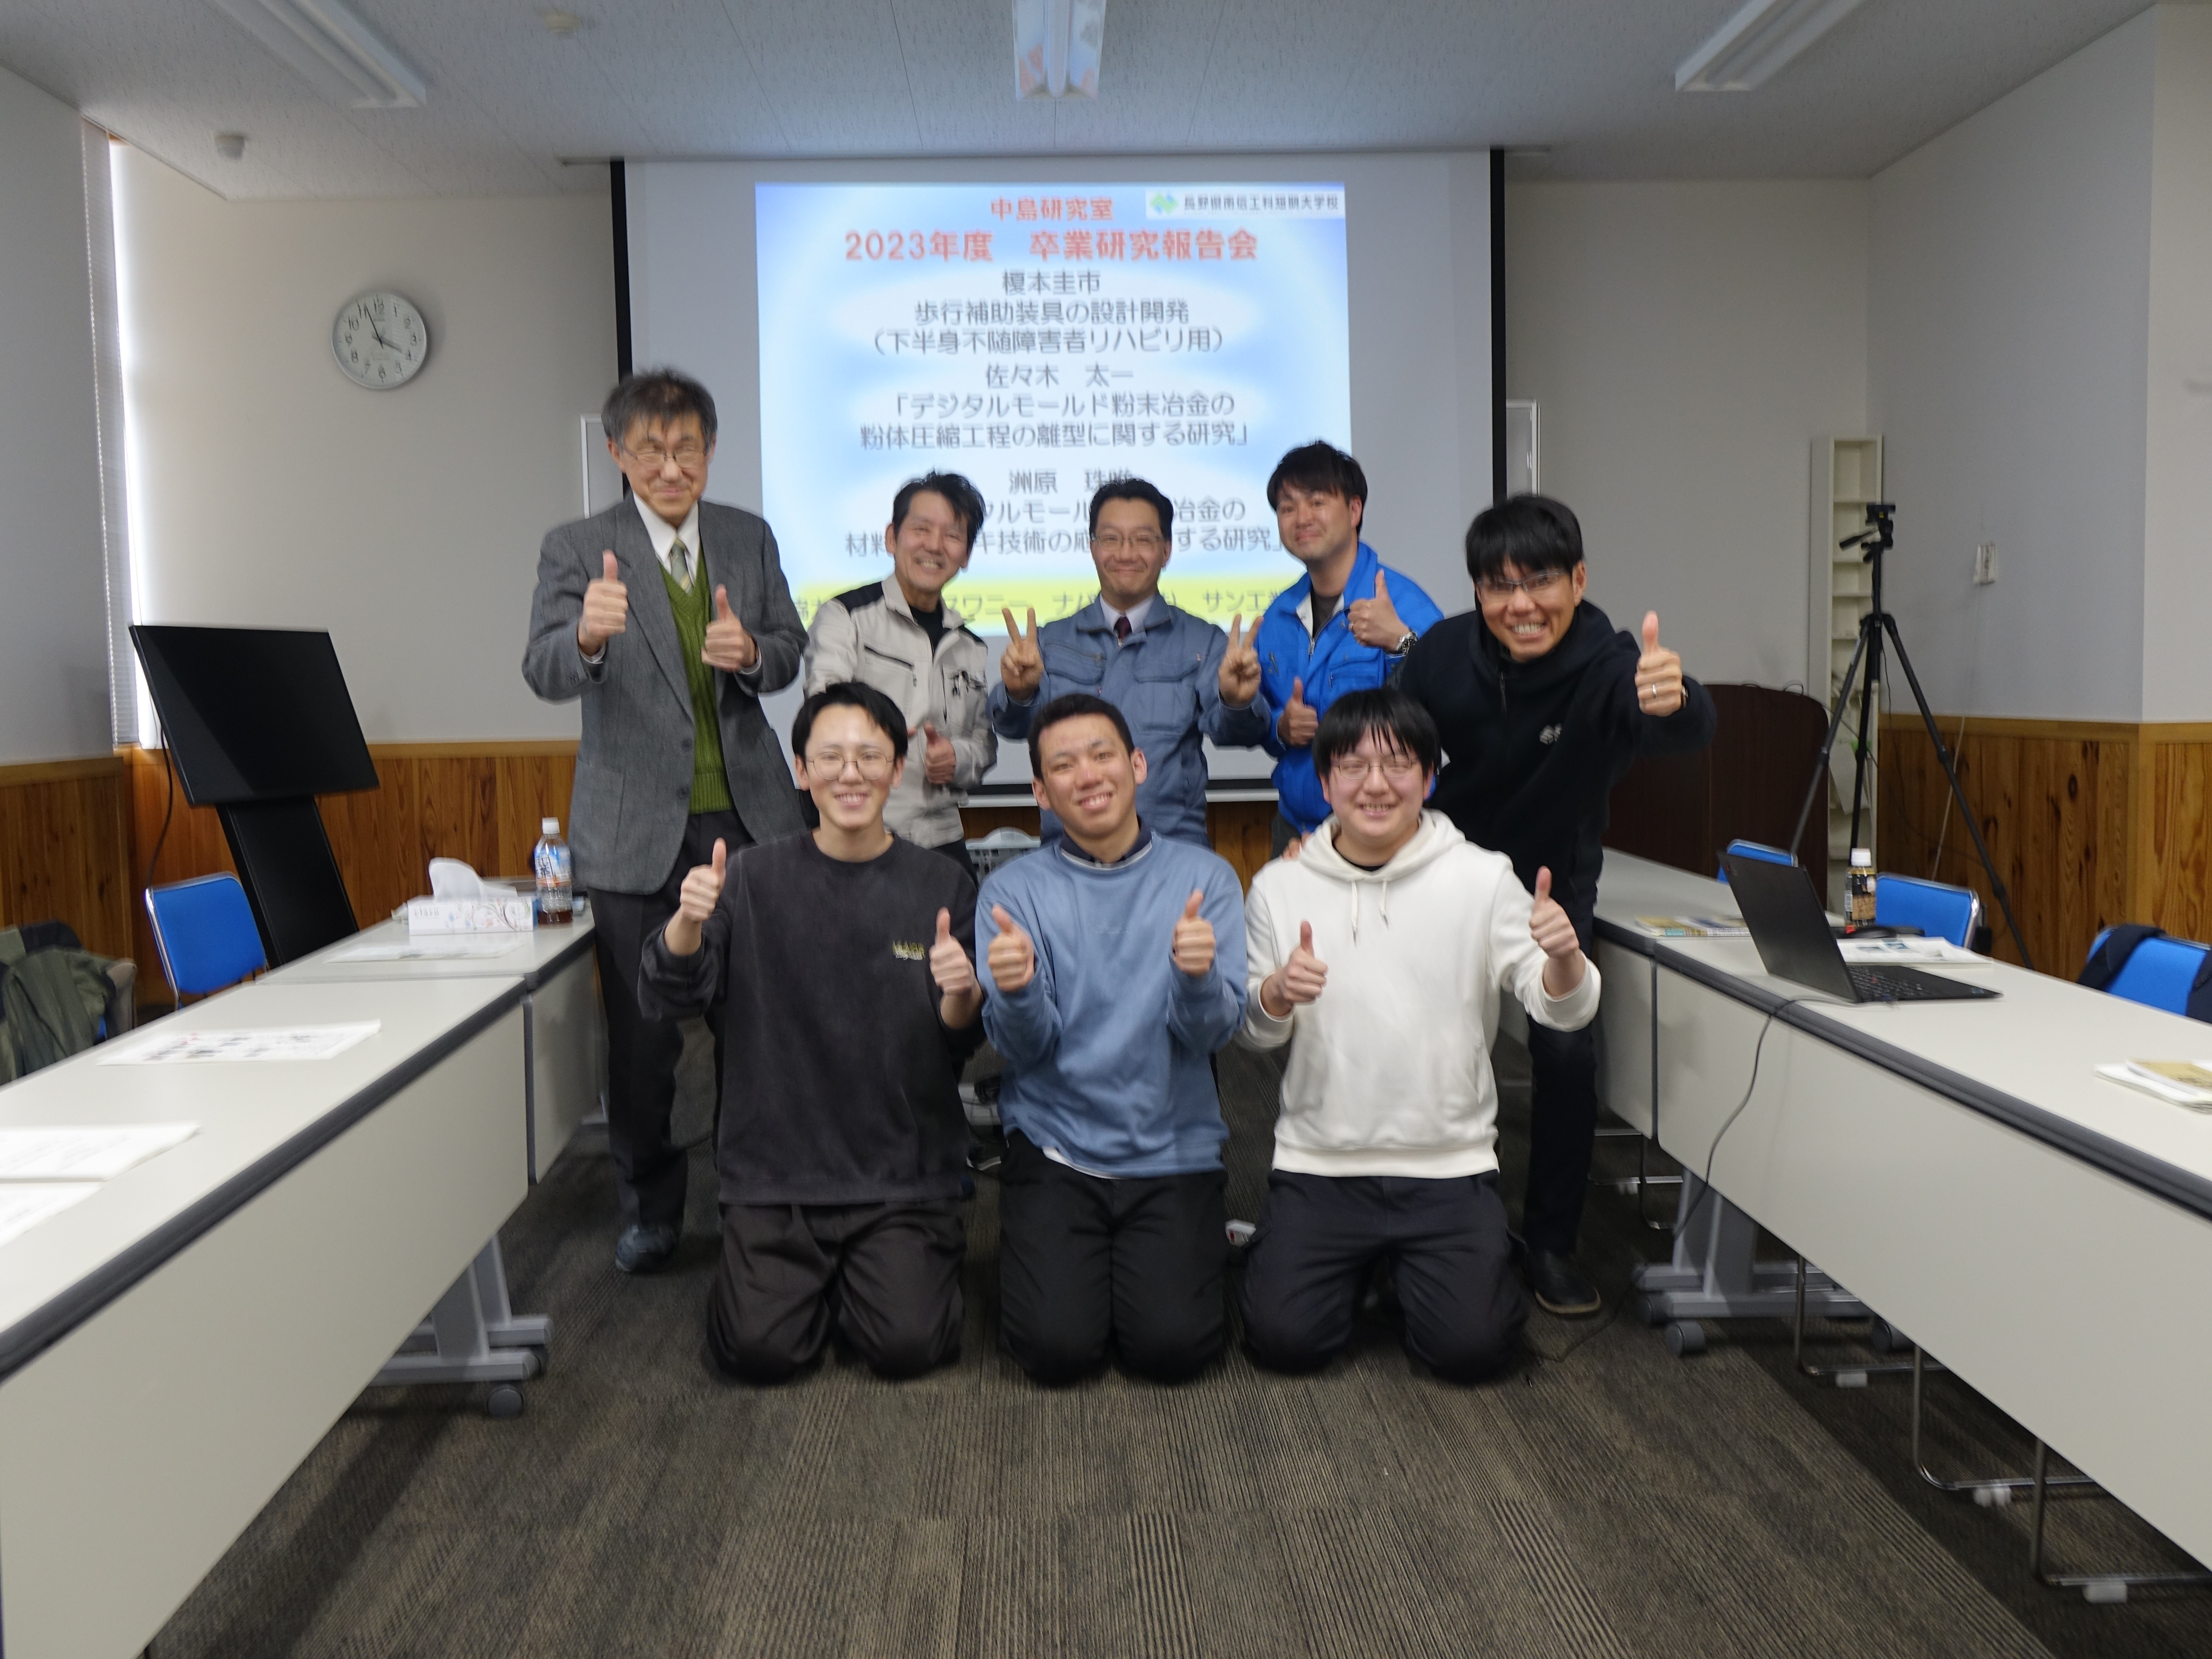 中島研究室の学生が卒業研究報告会を実施しました。